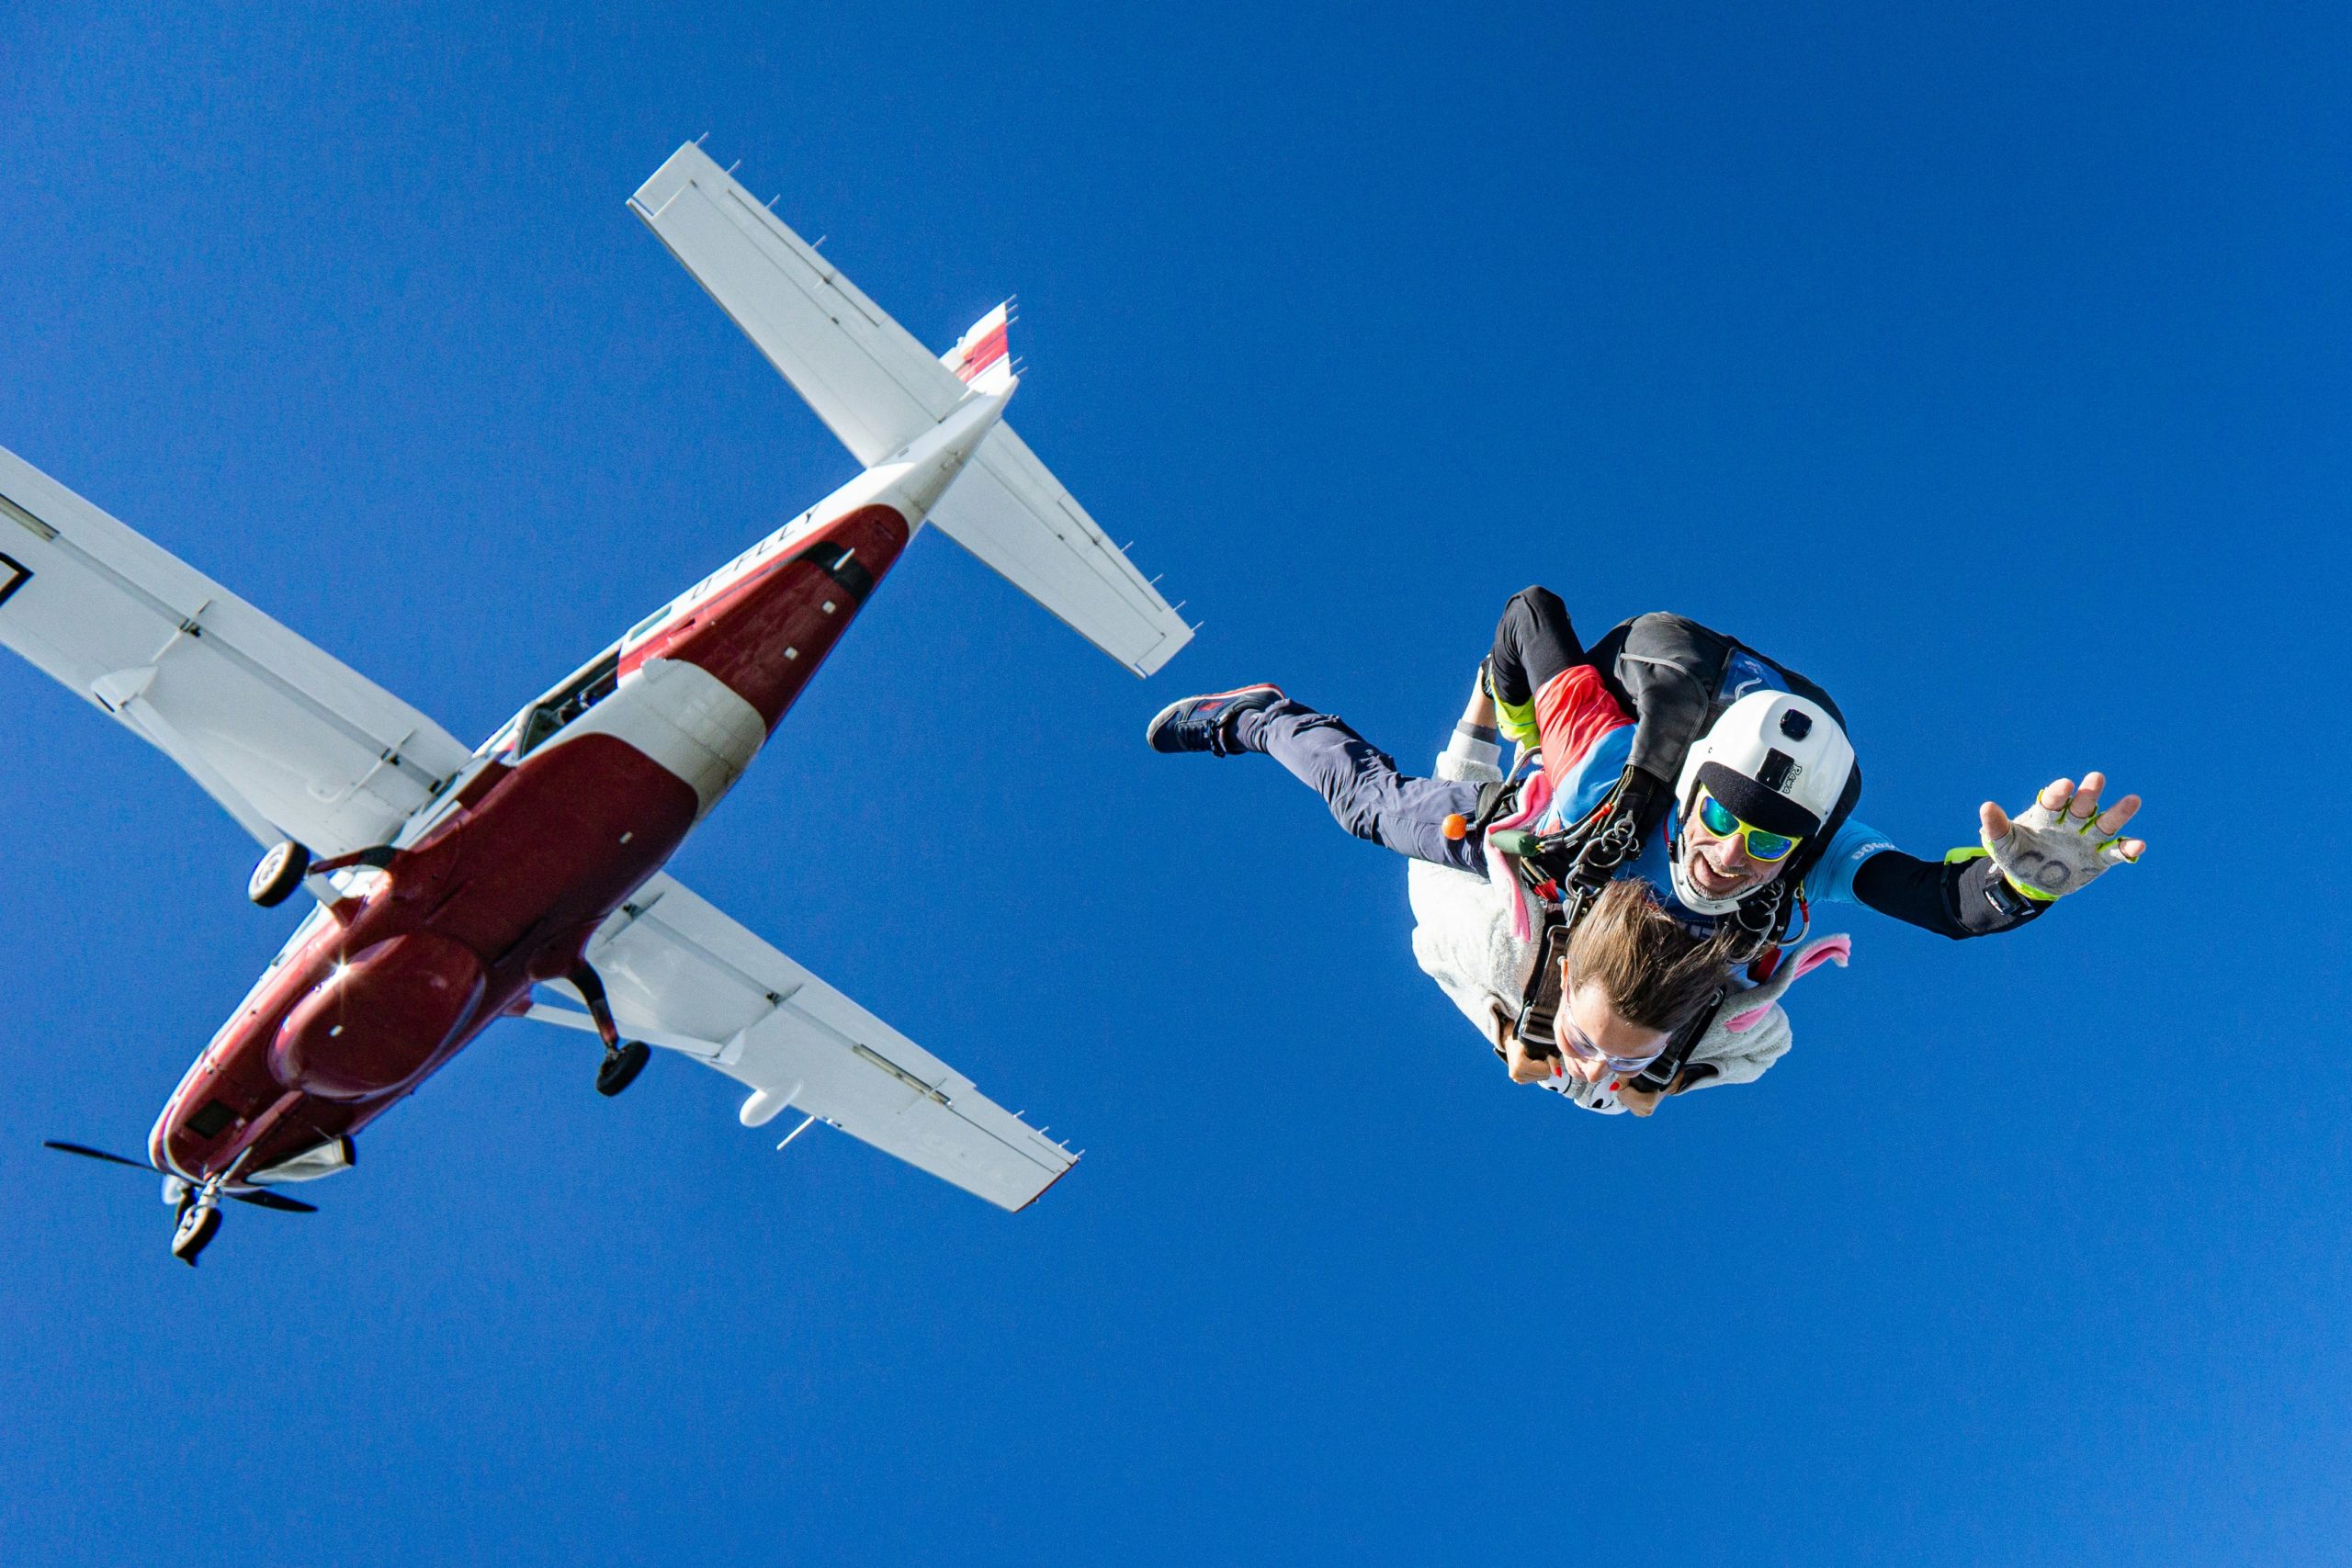 Un parachutiste en combinaison de saut multicolore et casque blanc sourit à la caméra en tombant librement avec un petit avion rouge et blanc avec les ailes au-dessus de lui sur un ciel bleu clair.